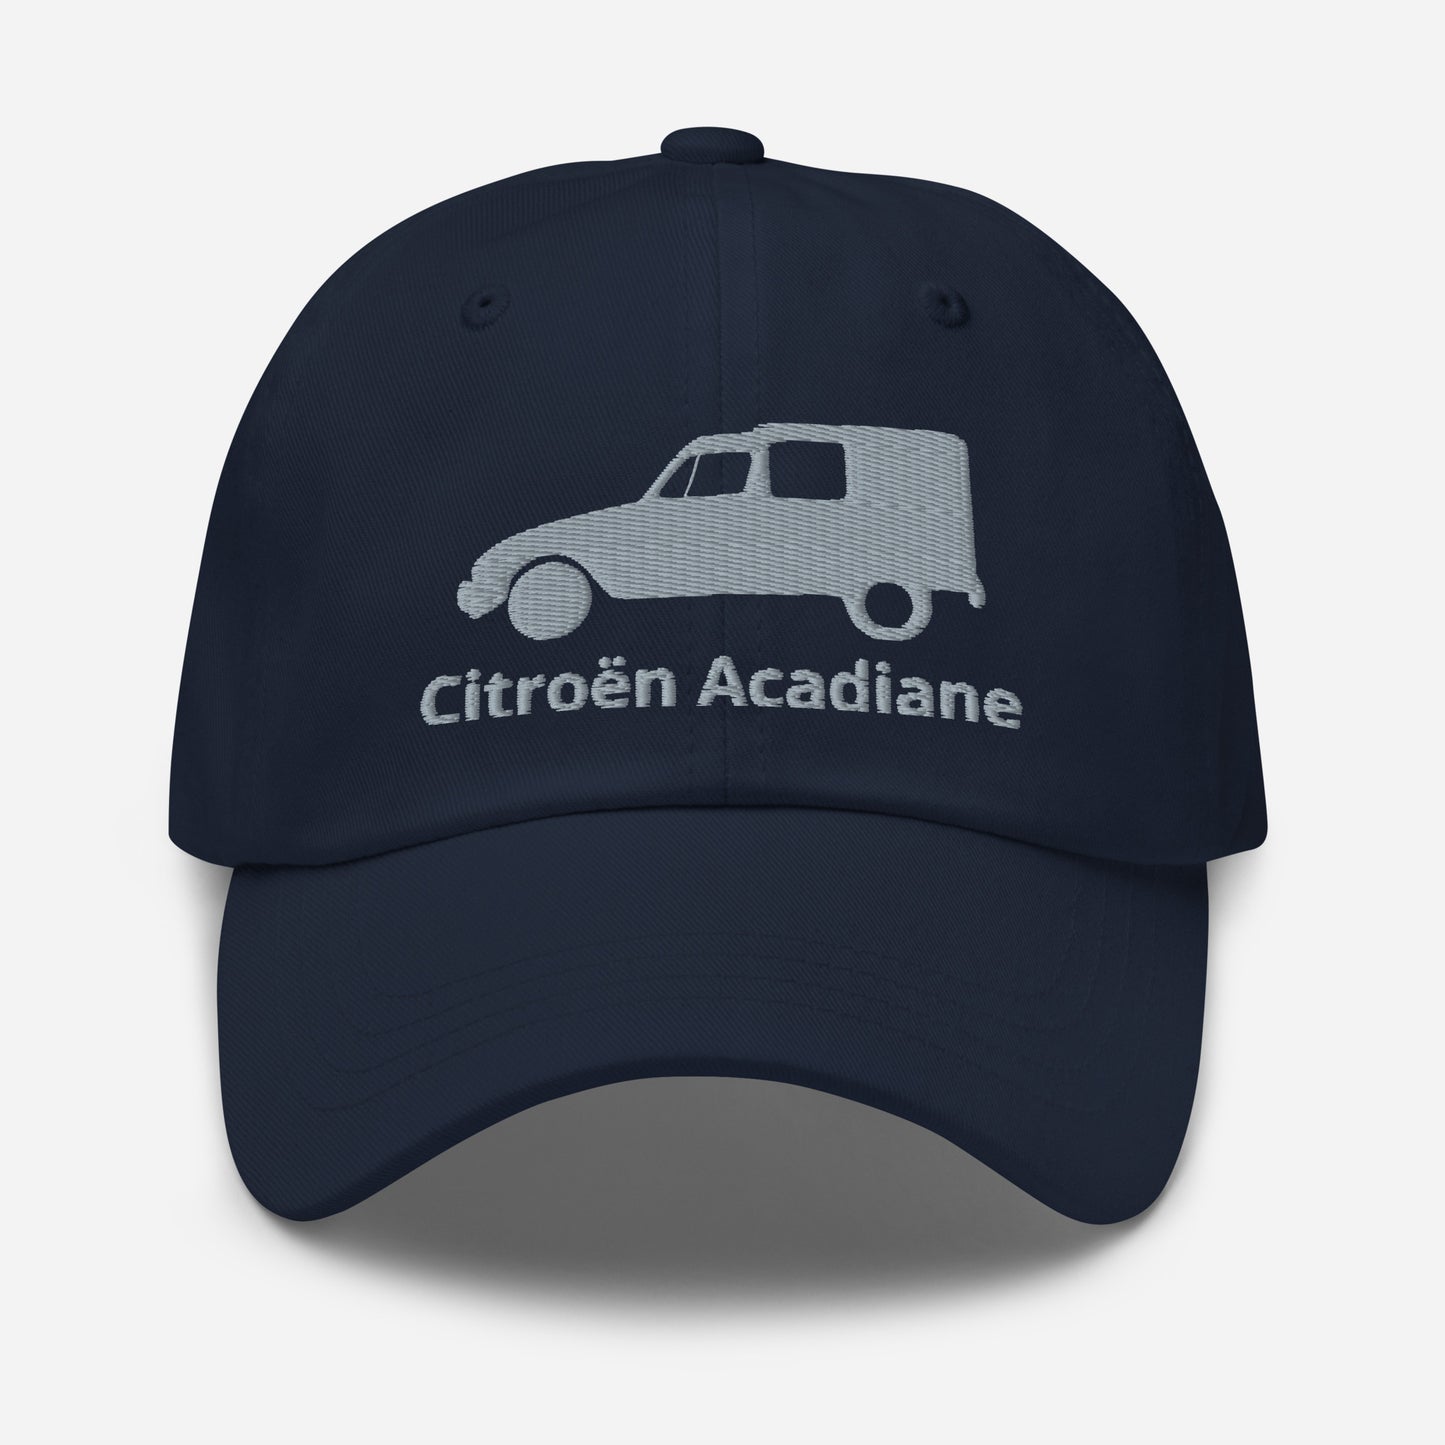 Geborduurde Citroën Acadiane pet - Zwart, Navy, Rood, Grijs, L.Blauw of Wit